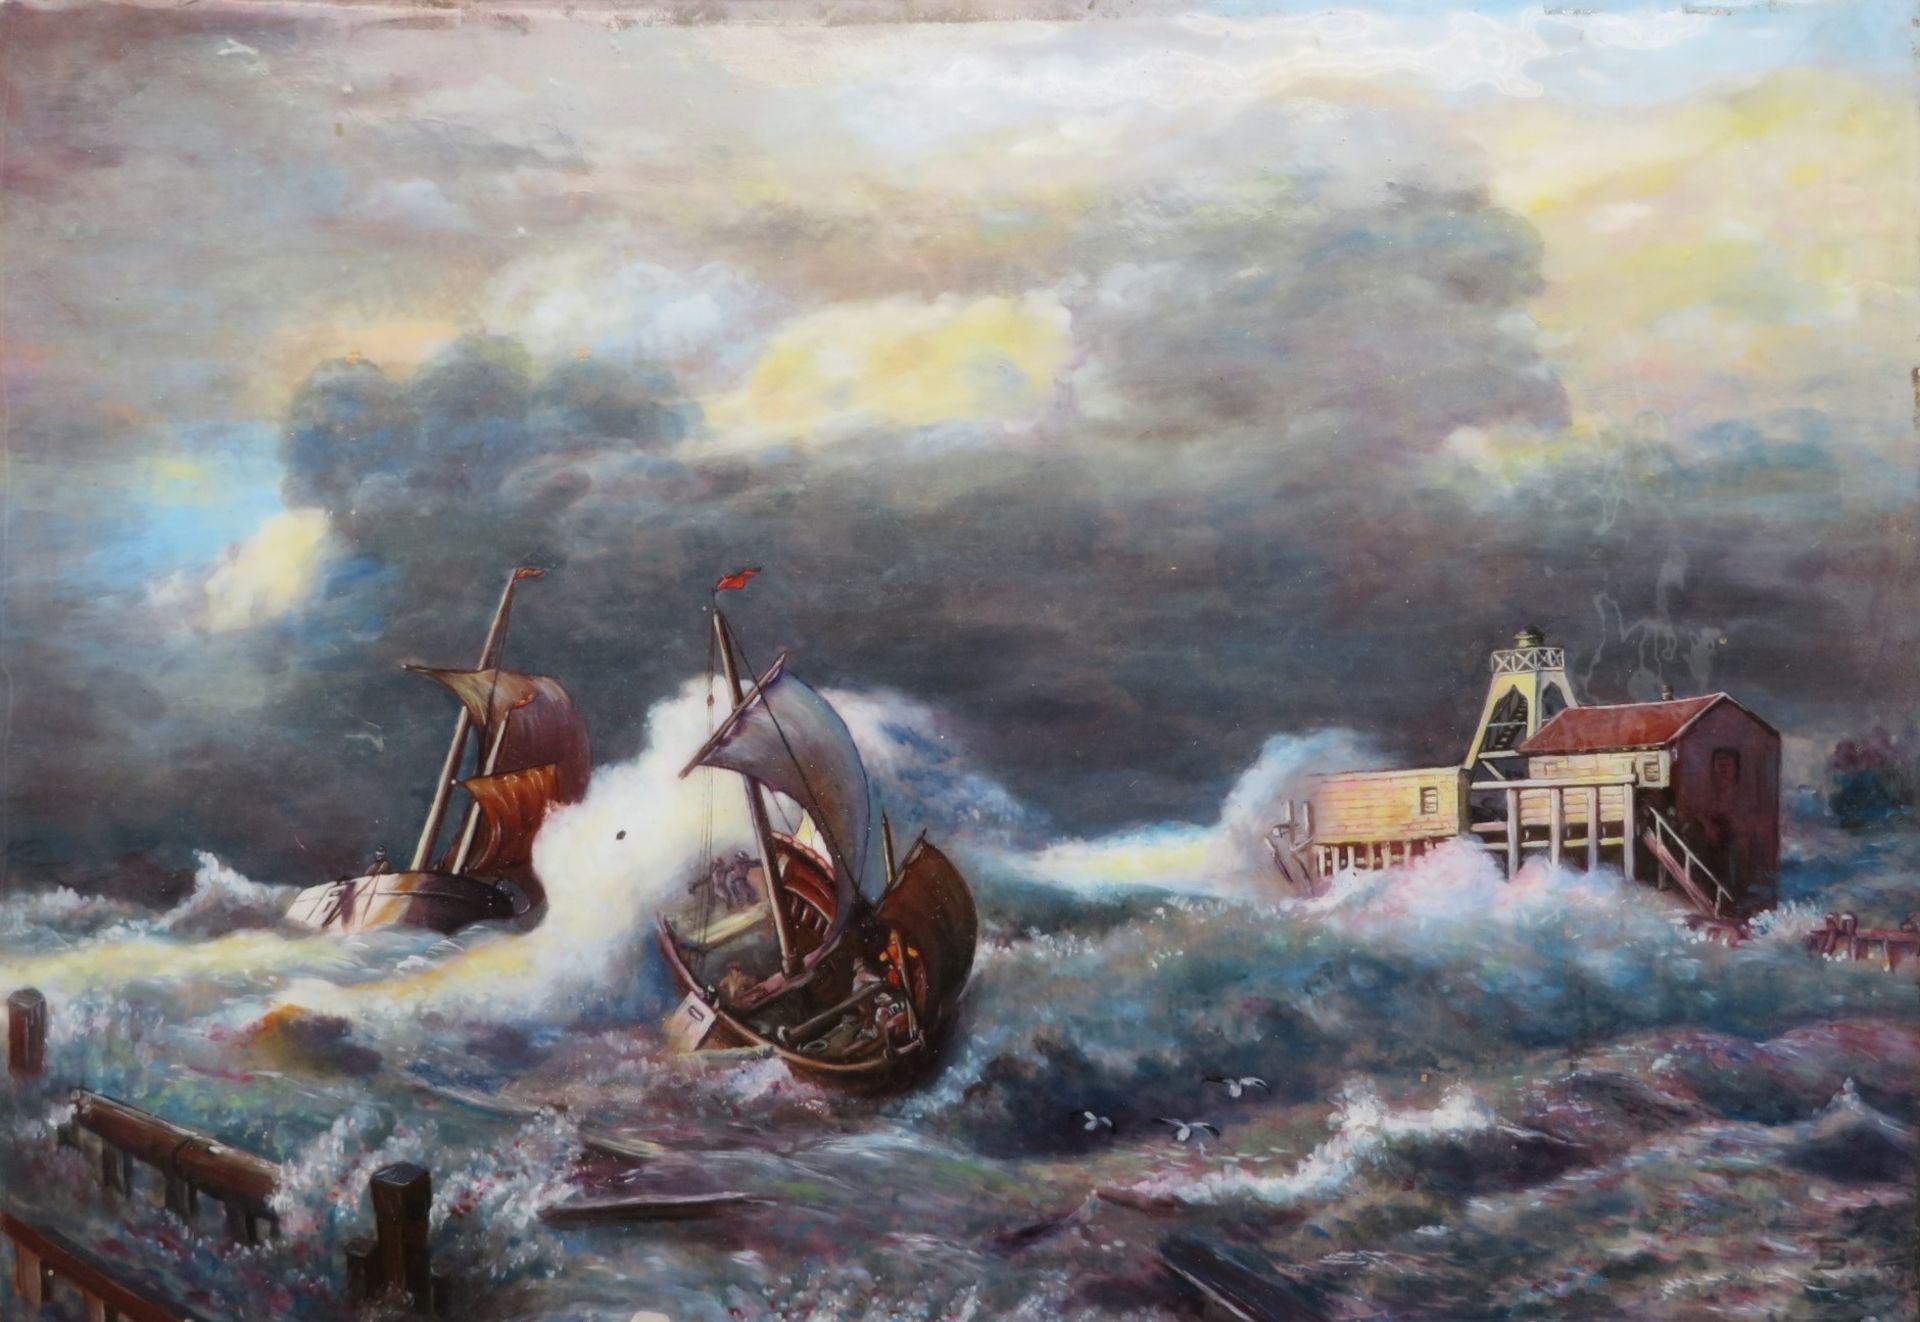 Monogrammist, FB, "Fischerboote in stürmischer See", Emailmalerei, 16 x 22 cm, o.R.